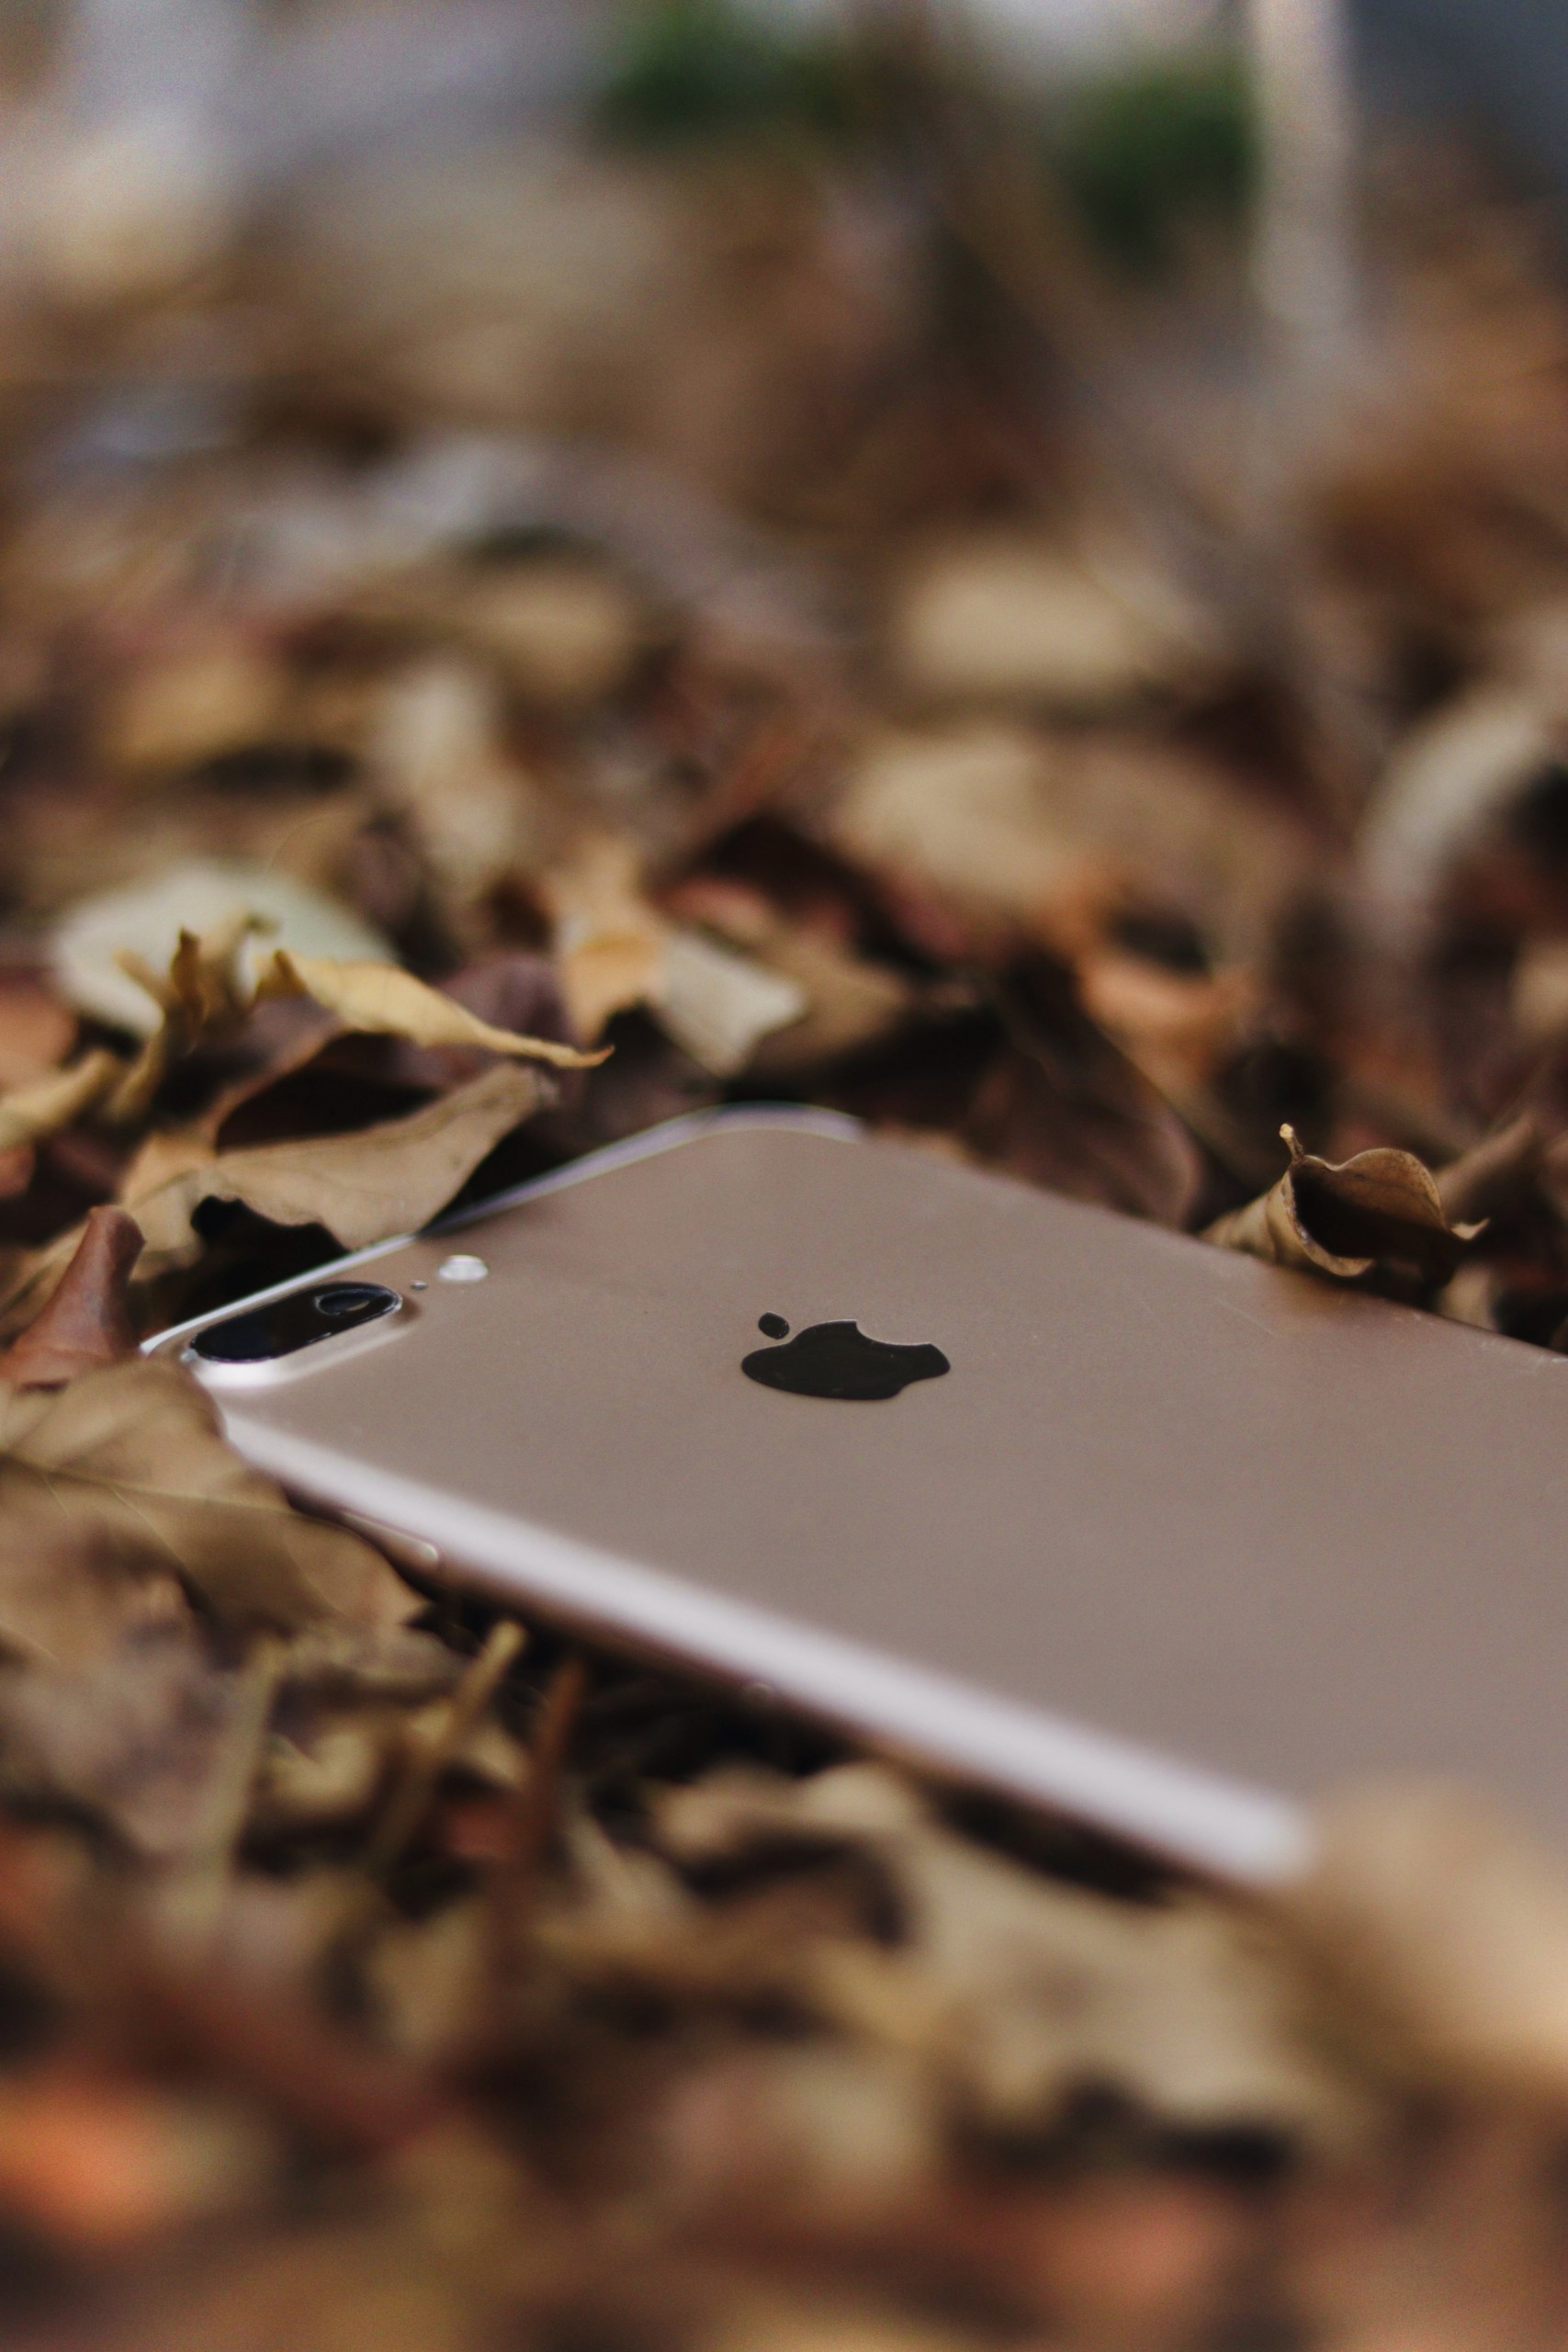 iPhone 7 Plus on Leaves